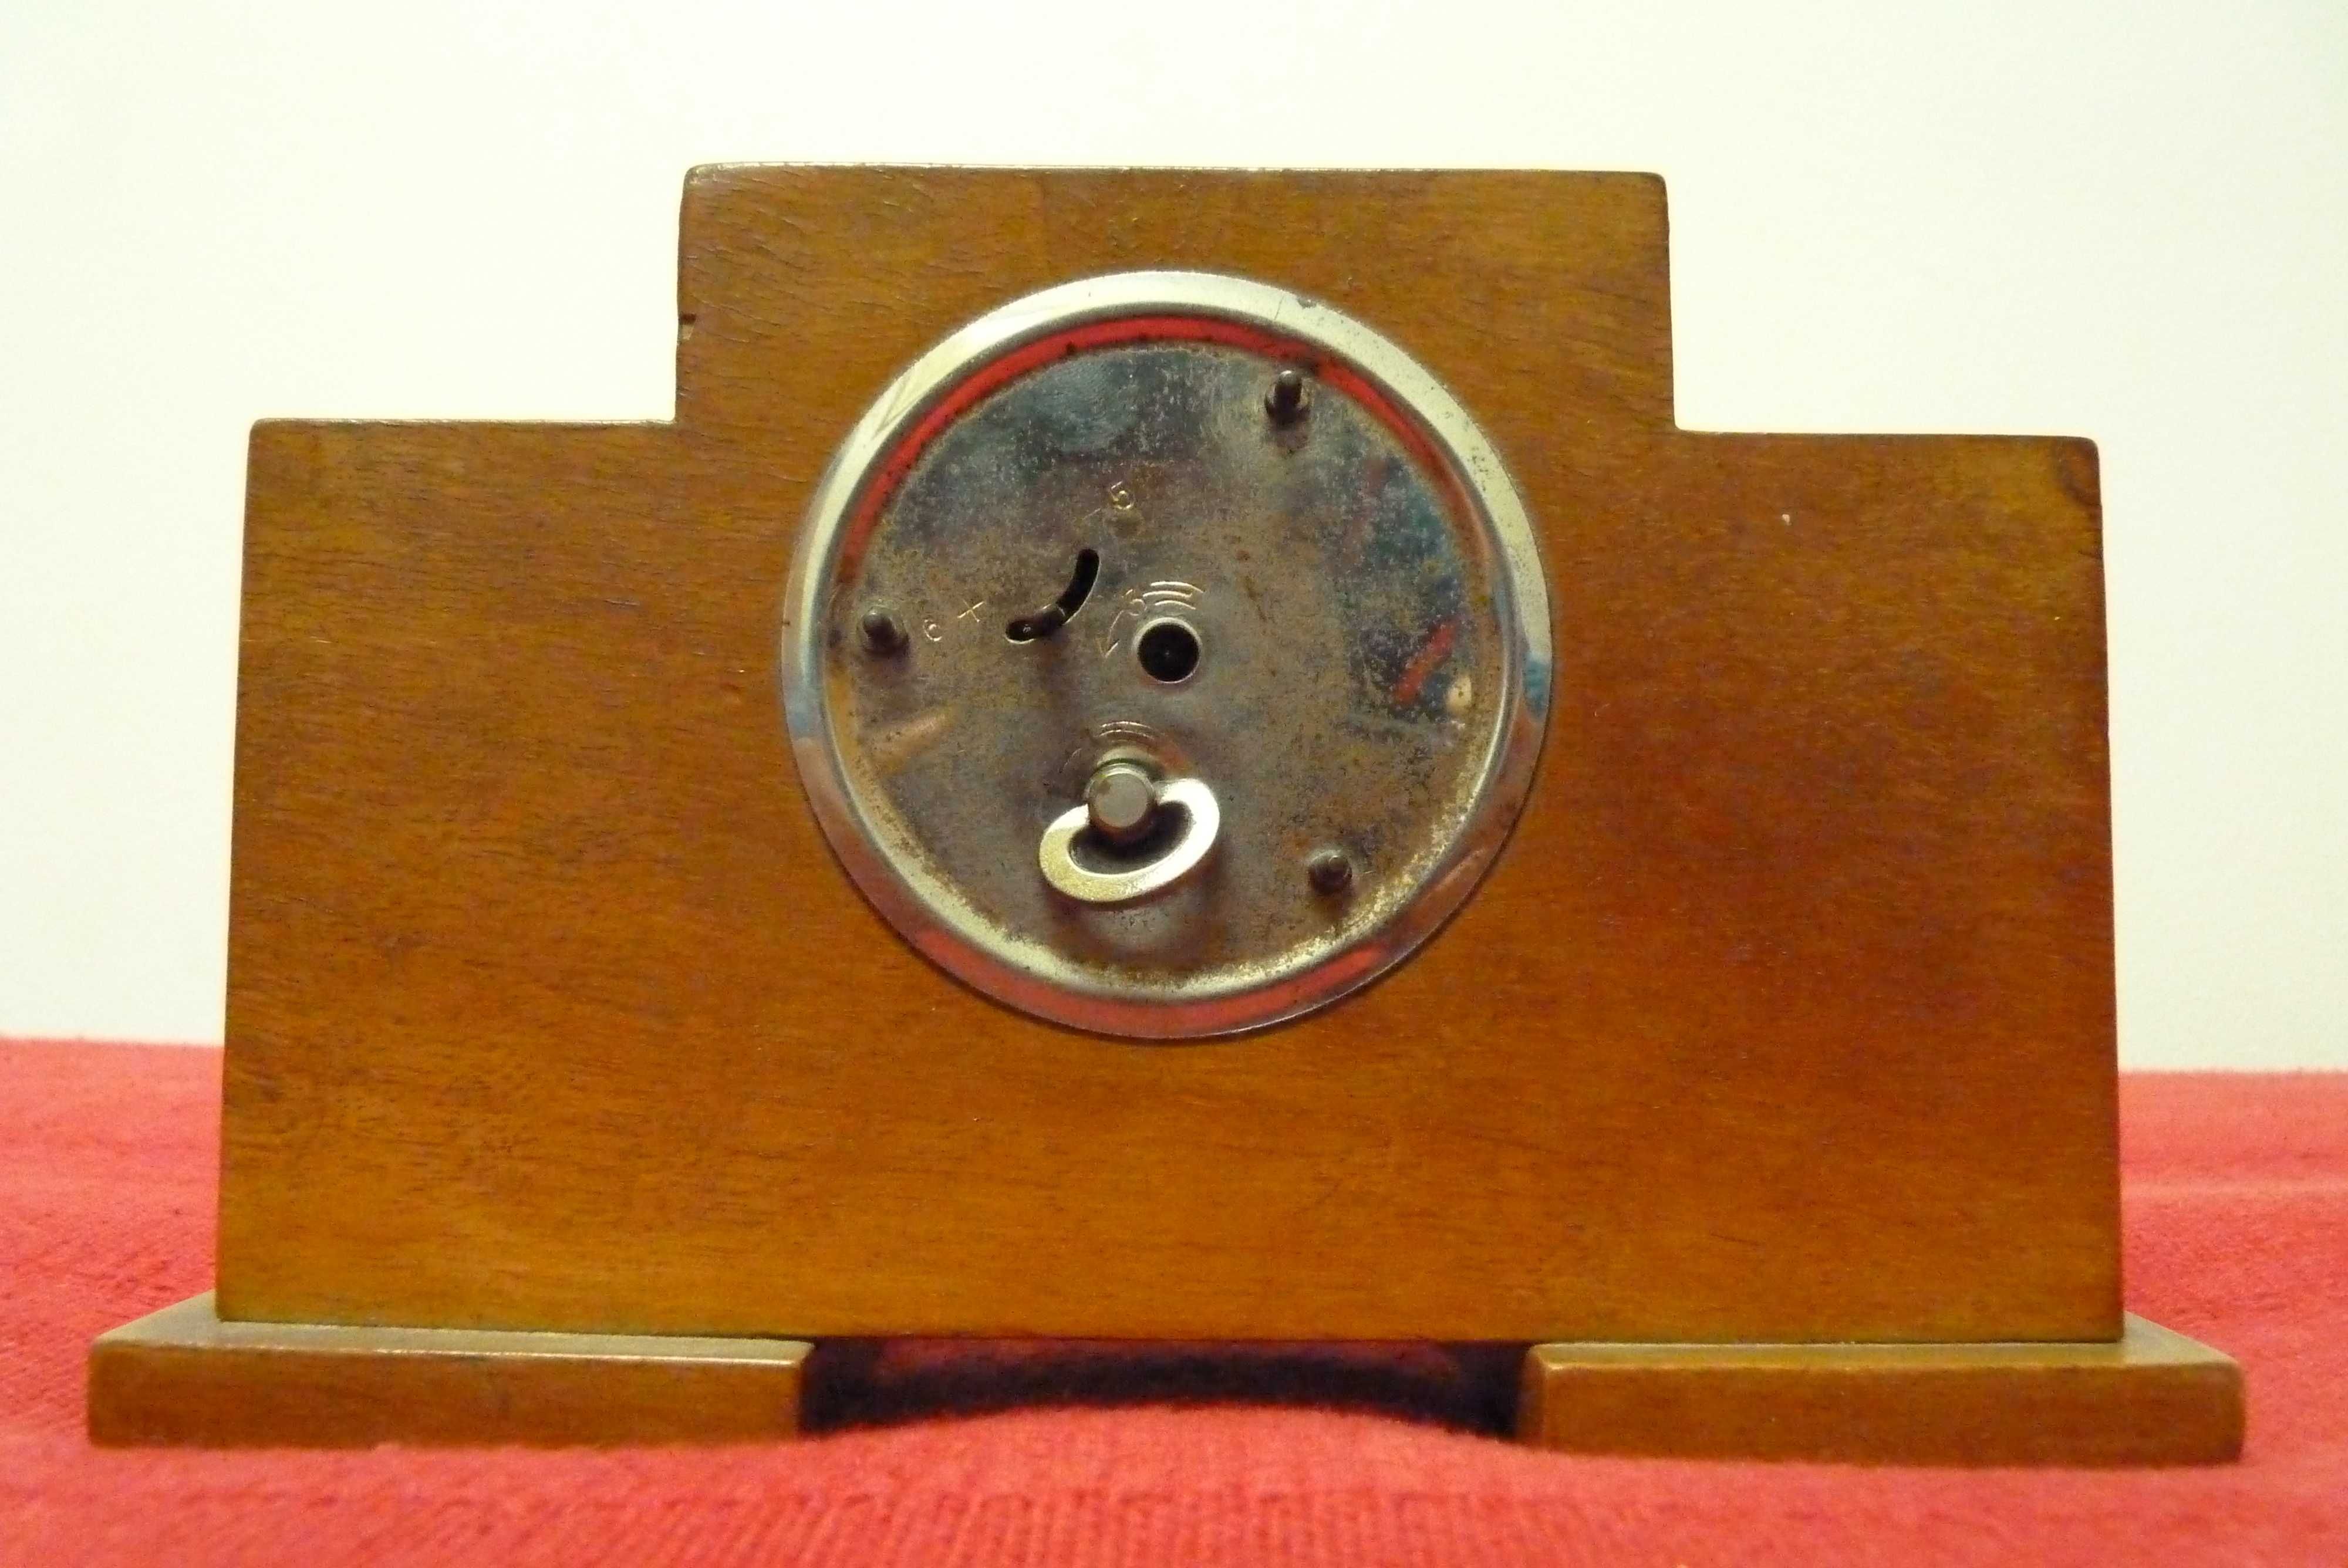 Relógio de mesa Art Déco - antigo